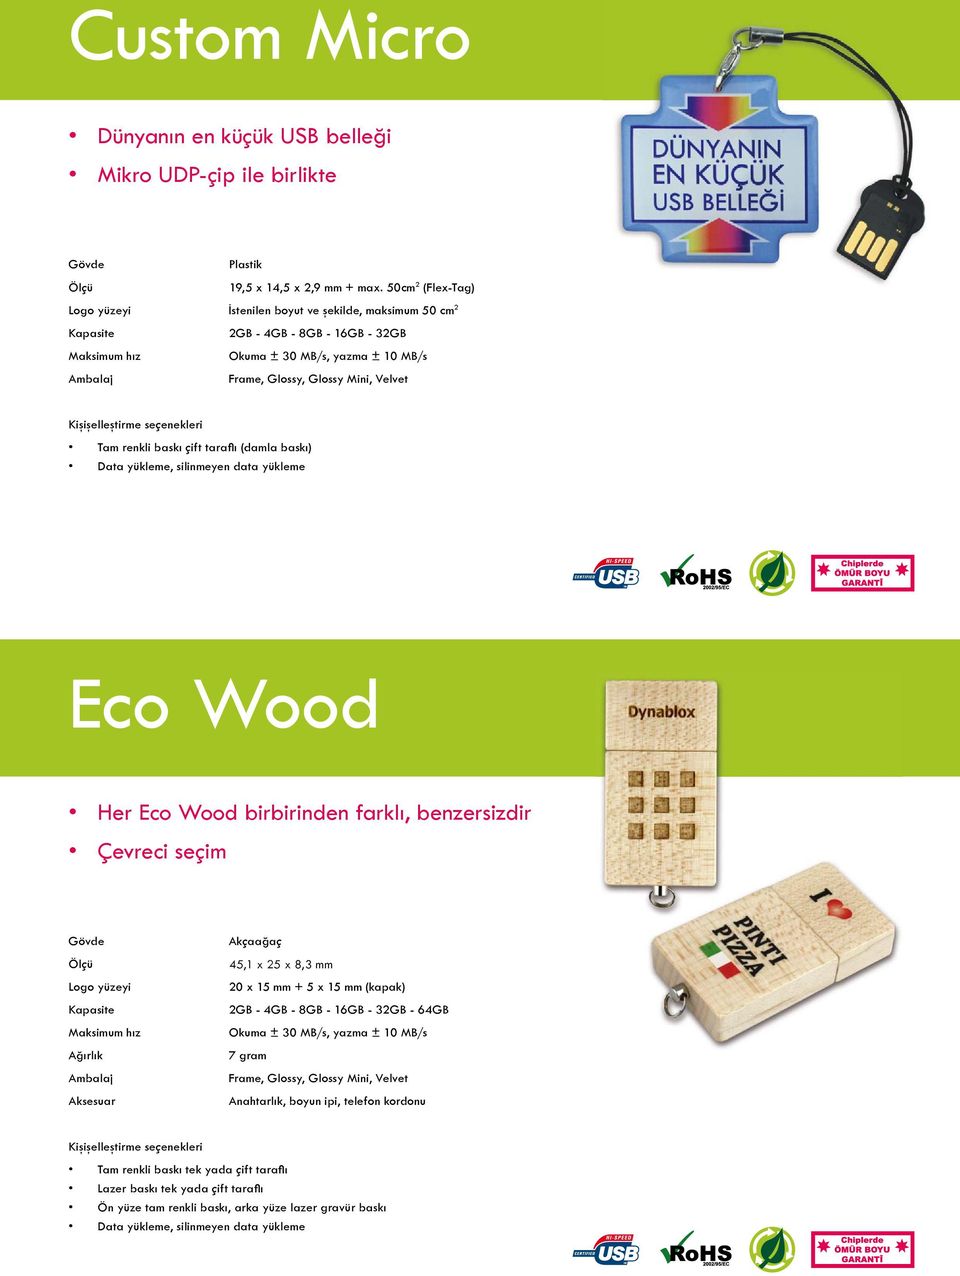 baskı çift tarafl ı (damla baskı) Data yükleme, silinmeyen data yükleme Eco Wood Her Eco Wood birbirinden farklı, benzersizdir Çevreci seçim Logo yüzeyi Maksimum hız Ambalaj Aksesuar Akçaağaç 45,1 x